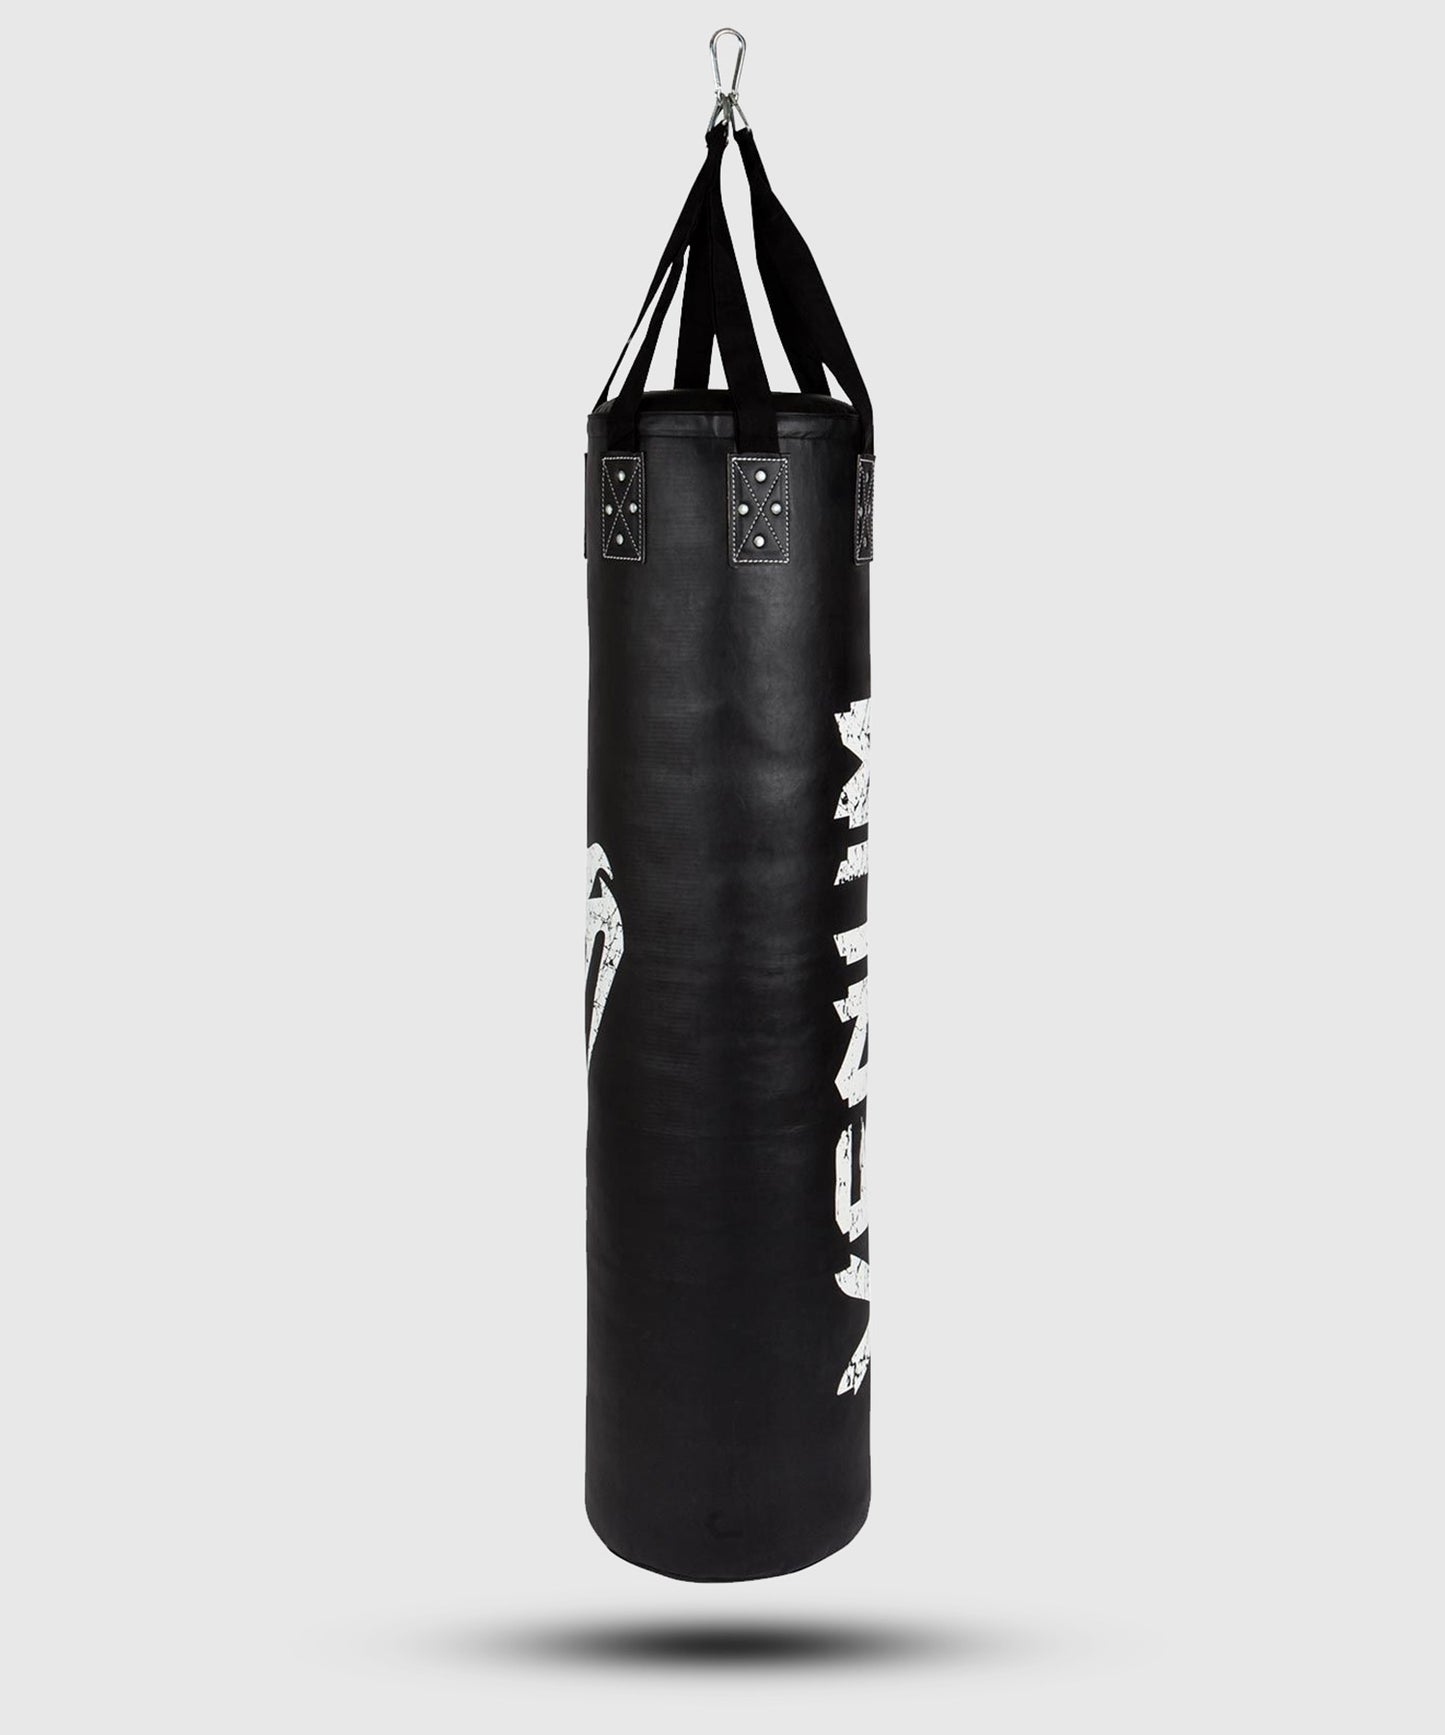 Saco de Boxeo Venum Challenger (gancho incluido) - Negro/Blanco - 170 cm - Lleno